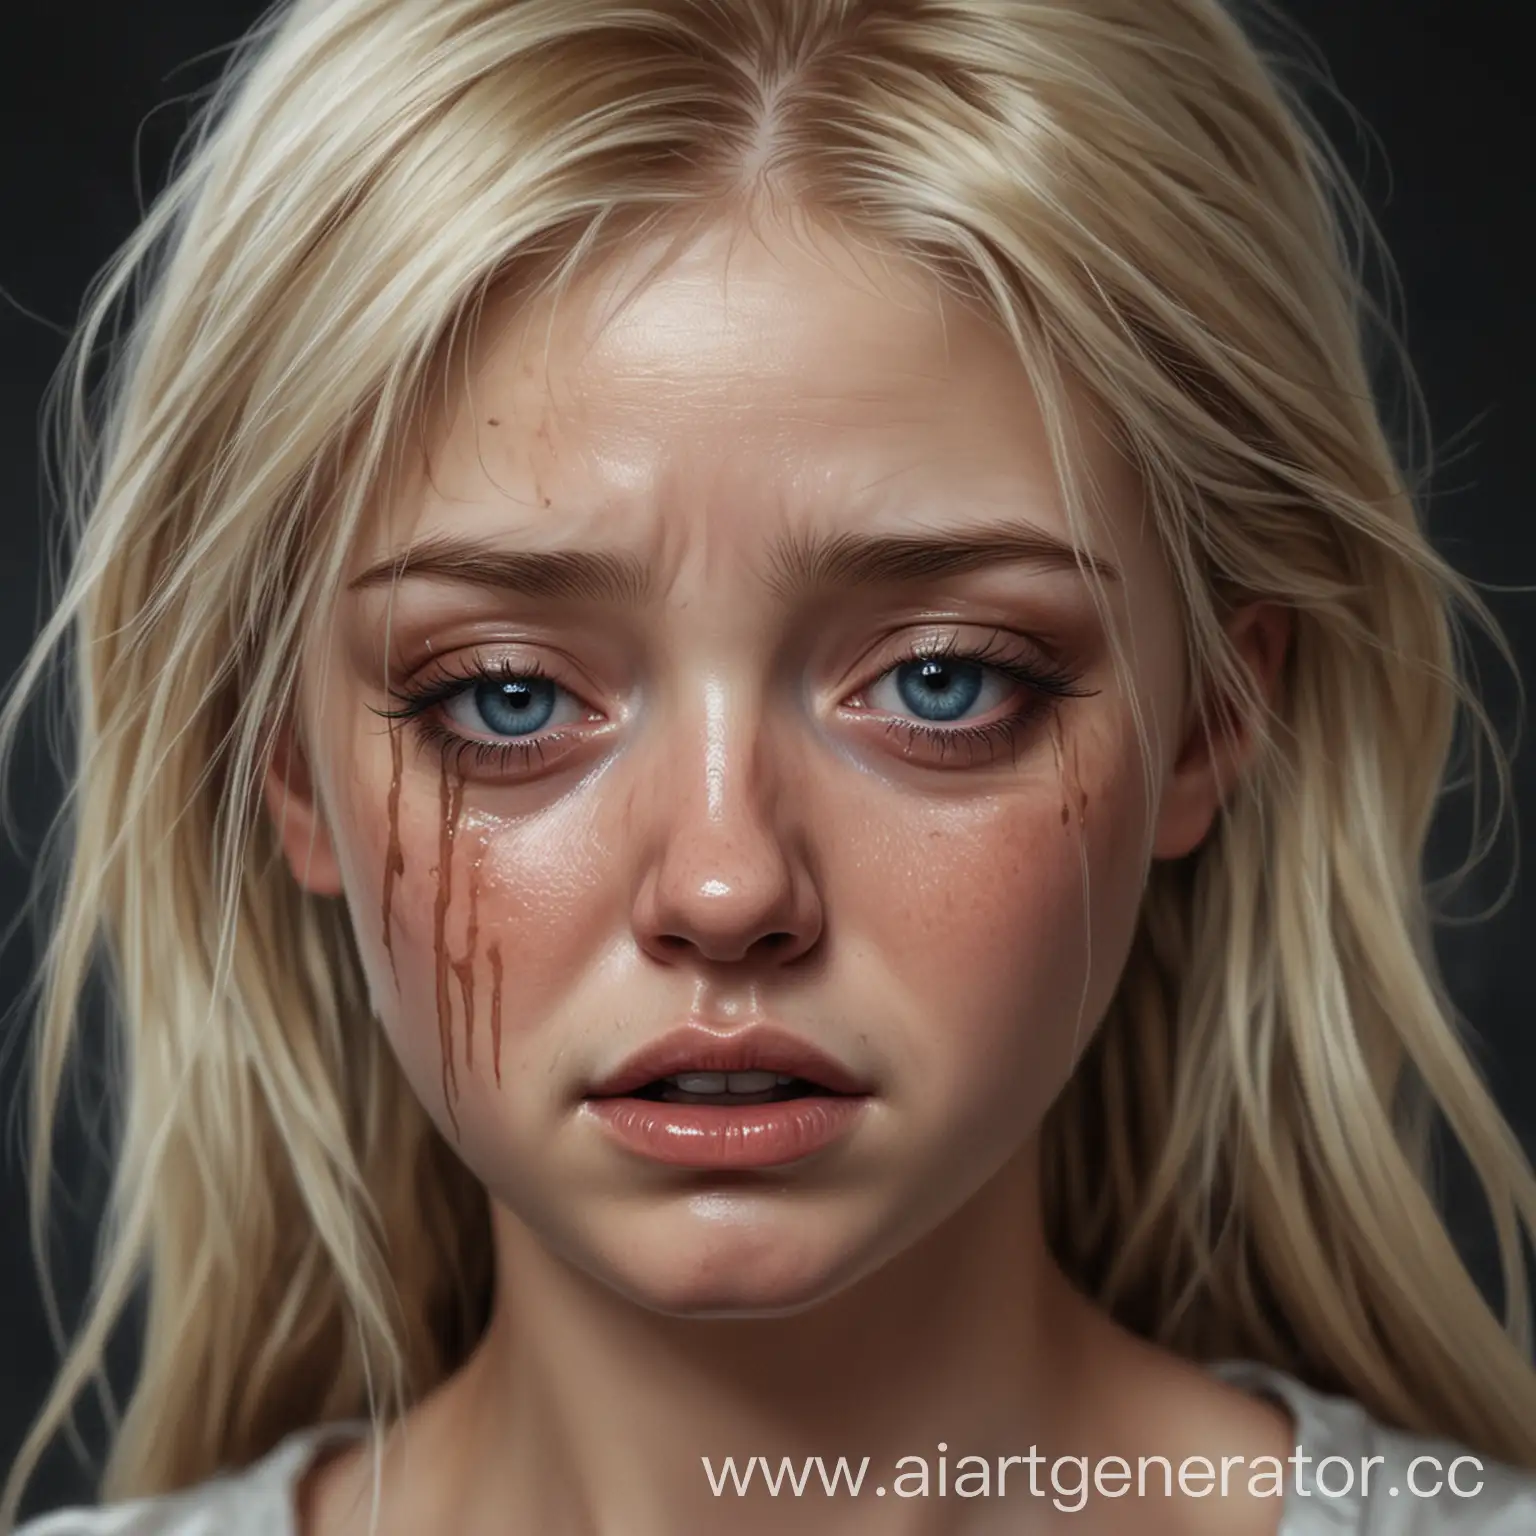 Нарисуй девушку блондинку в реализме, которая плачет, у нее размазан макияж, она очень расстроена, так же у нее голубые глаза, но видно только её лицо.